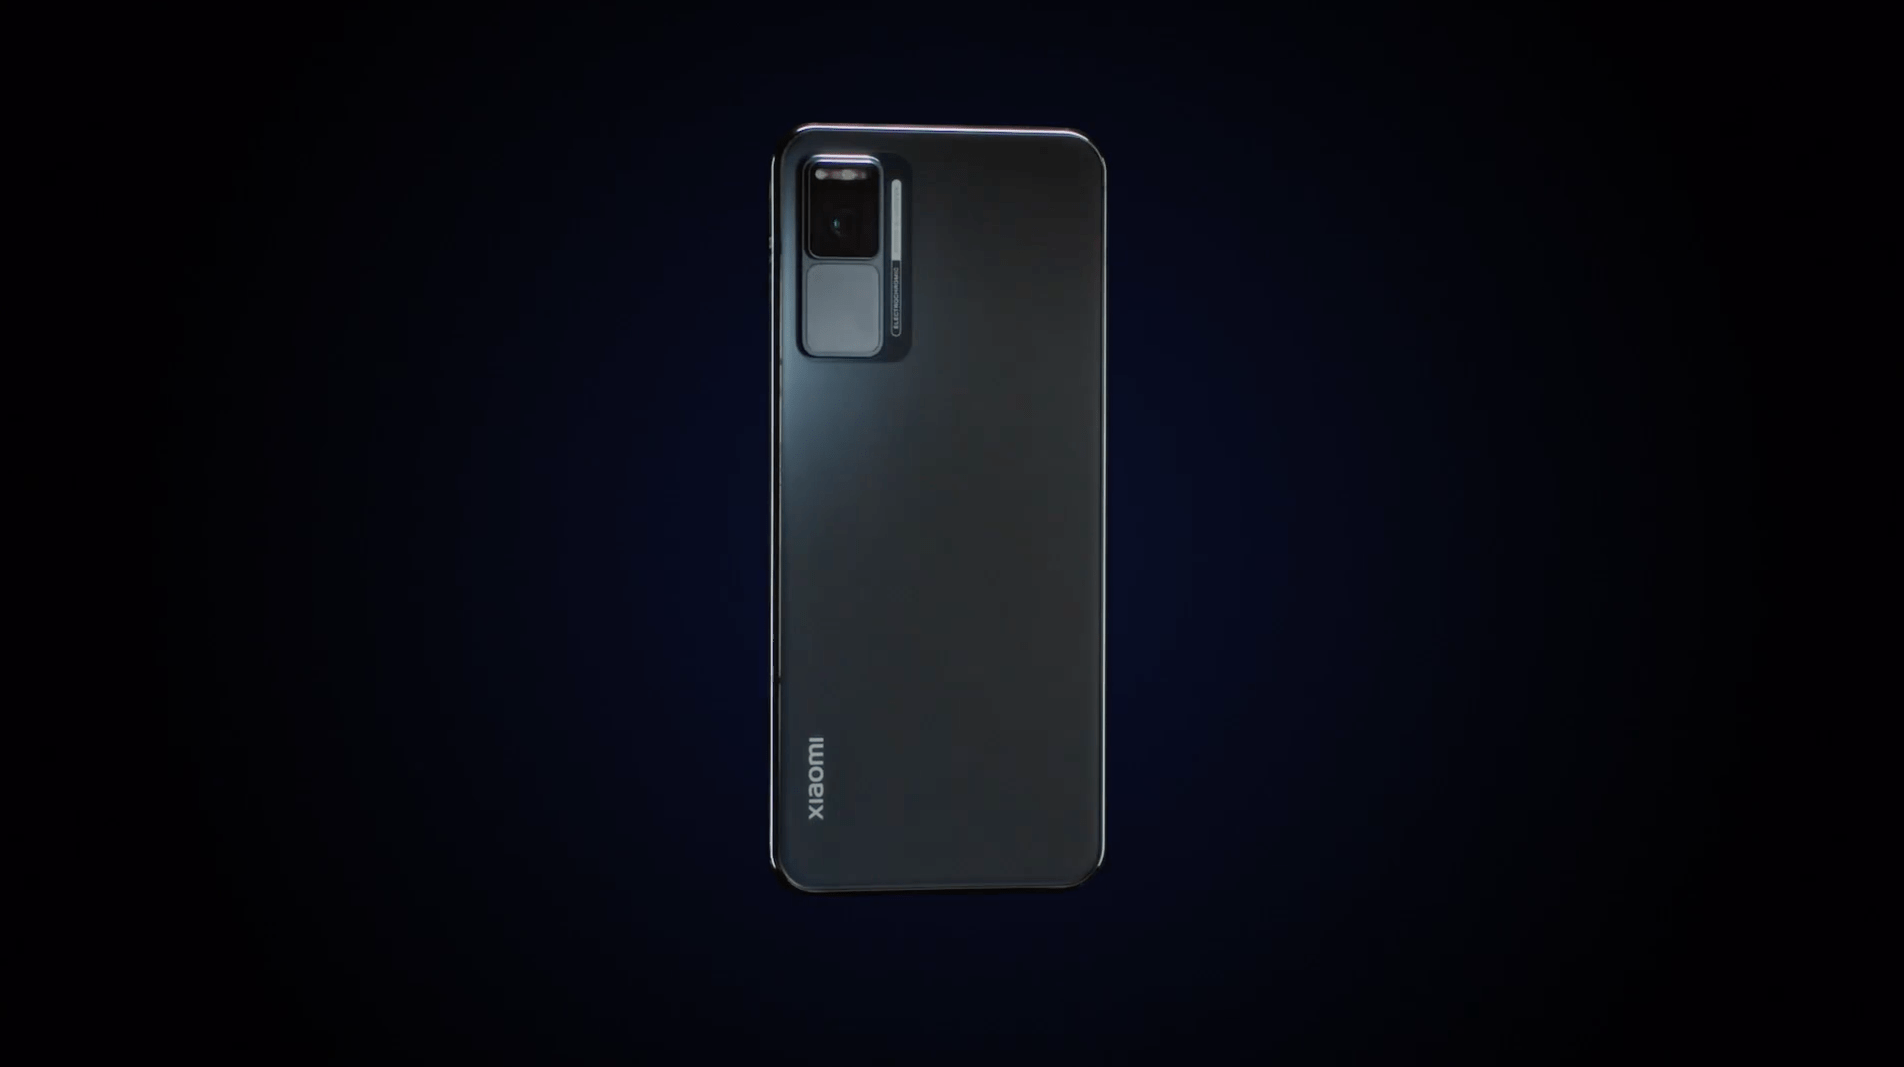 原创小米首款四曲瀑布屏概念手机公布一加9曝光配e3直面打孔屏